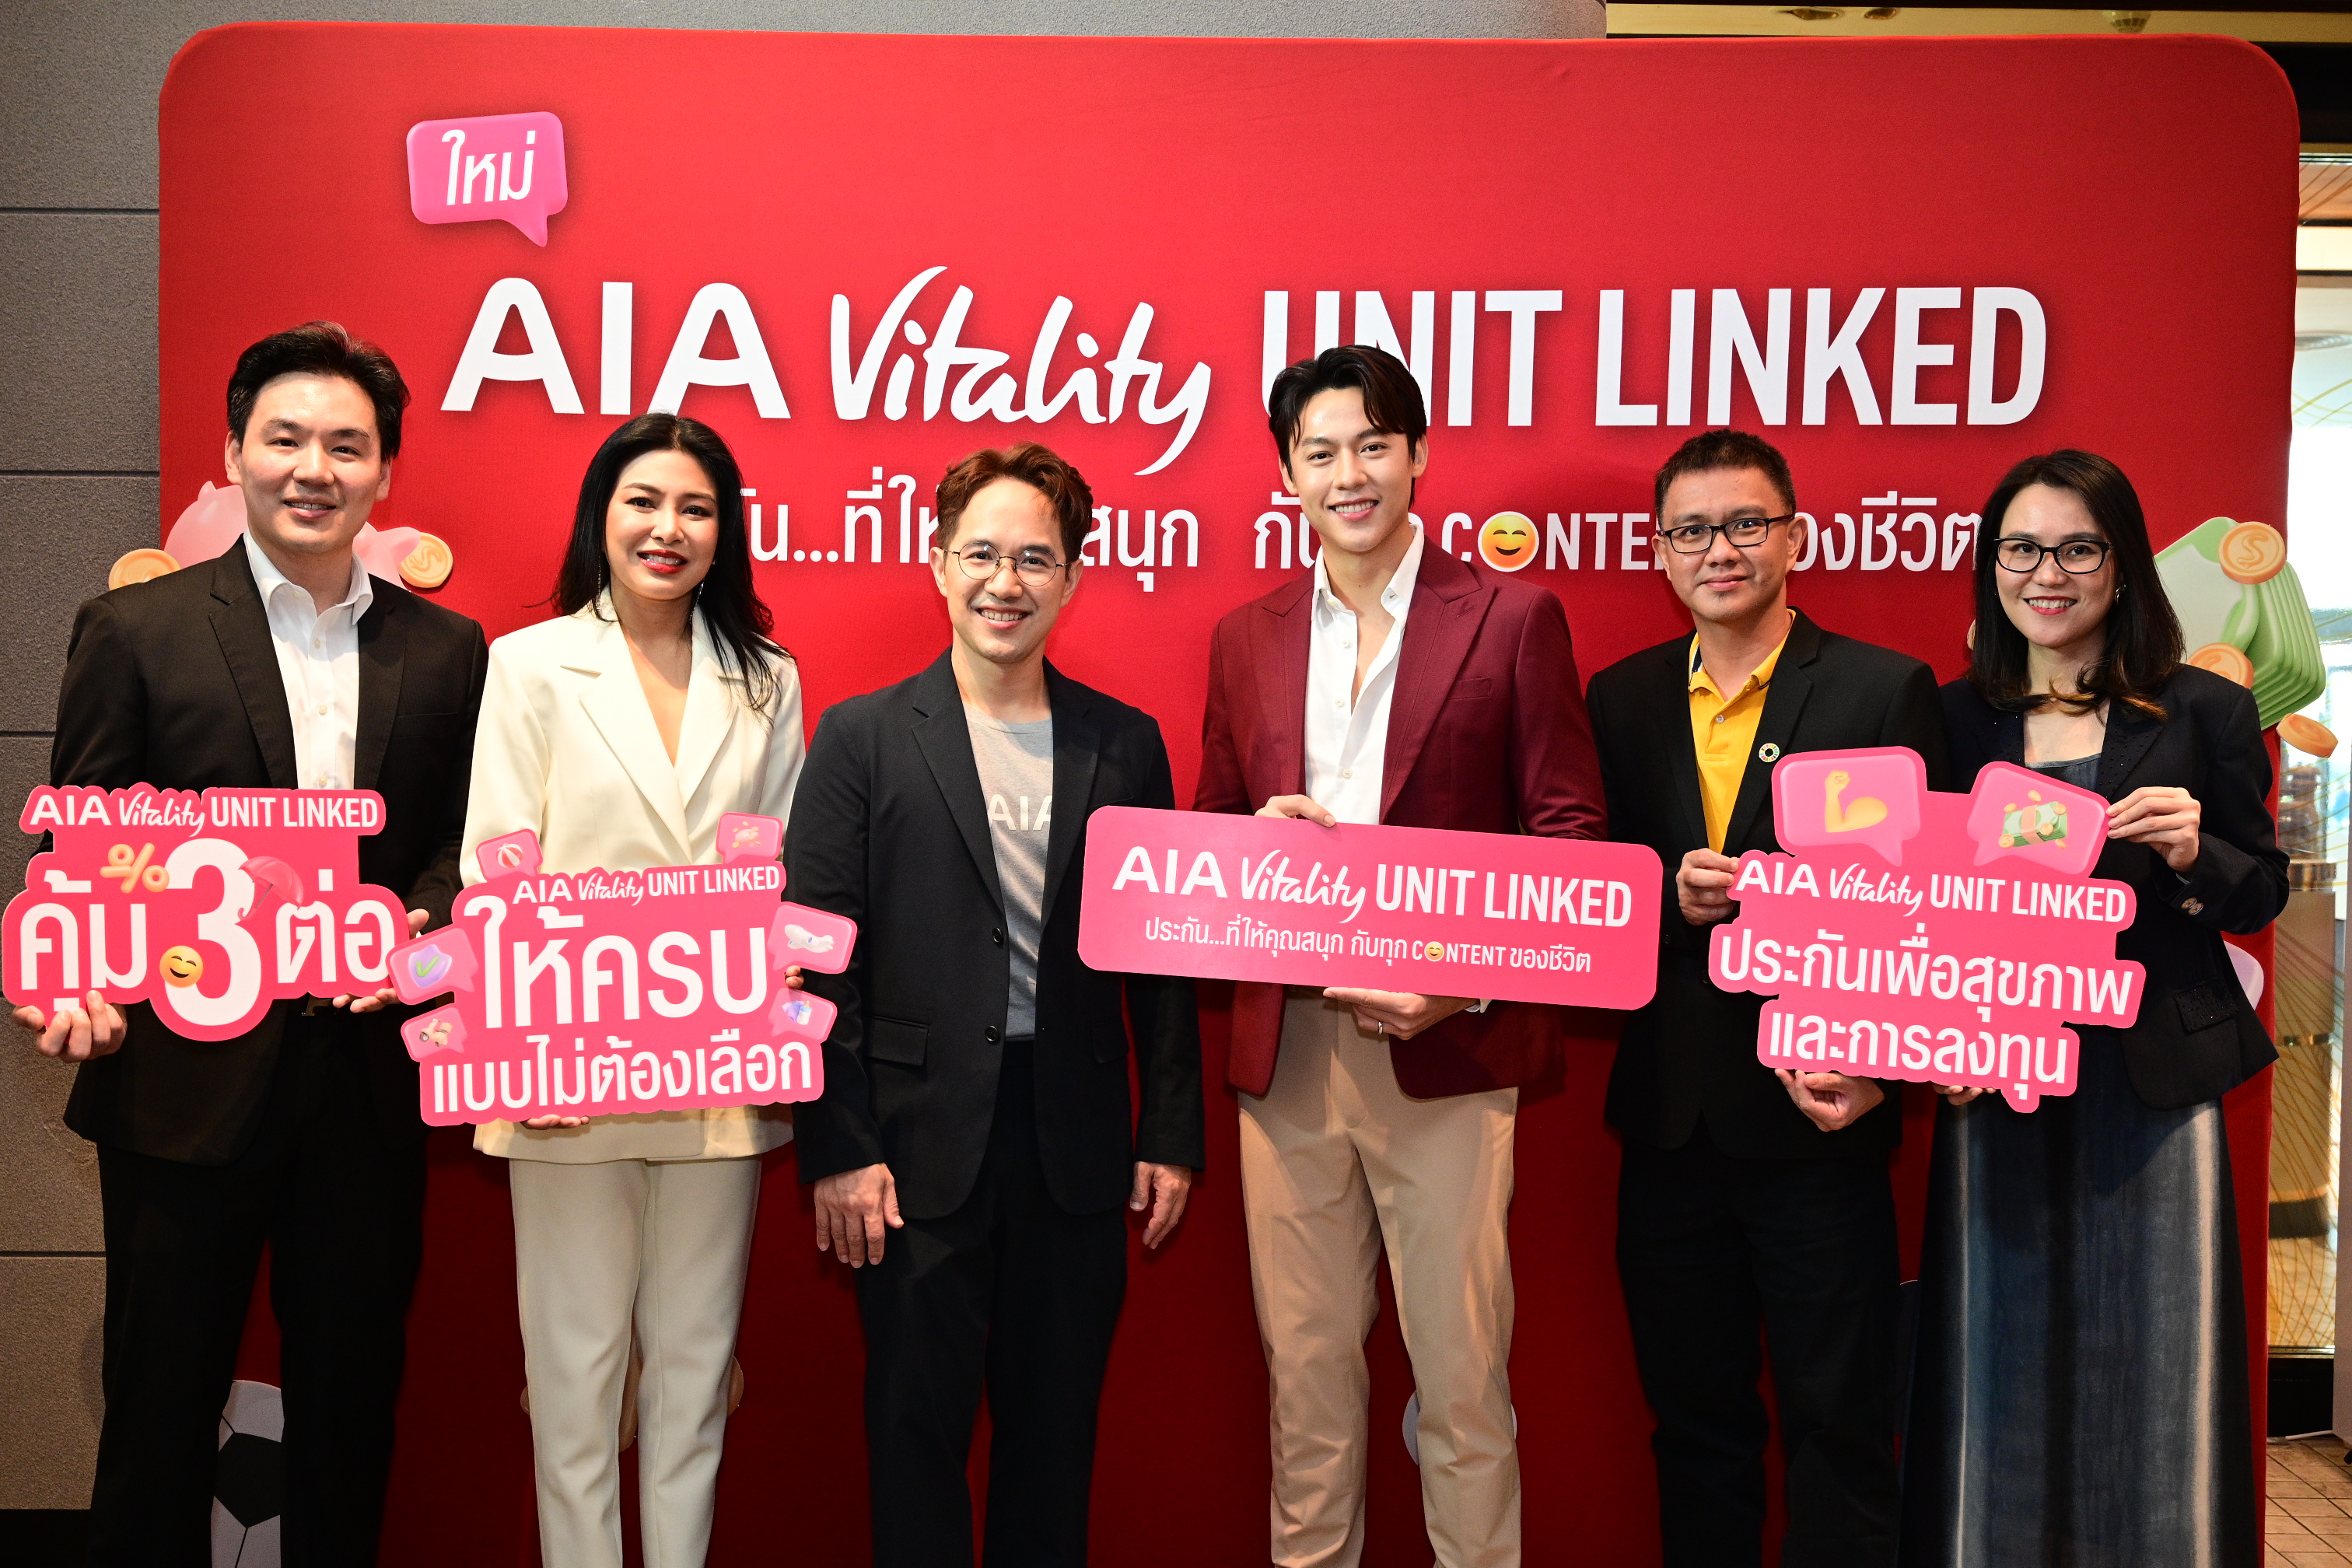 เอไอเอ ประเทศไทย เปิดตัวภาพยนตร์โฆษณาชุด “สนุกกับทุก Content ของชีวิต”  ชูจุดเด่น “AIA Vitality Unit Linked” ประกันรูปแบบใหม่  ที่ให้ครบทั้งเรื่องสุขภาพและการลงทุน พร้อมให้เงินคืนจากการดูแลสุขภาพ